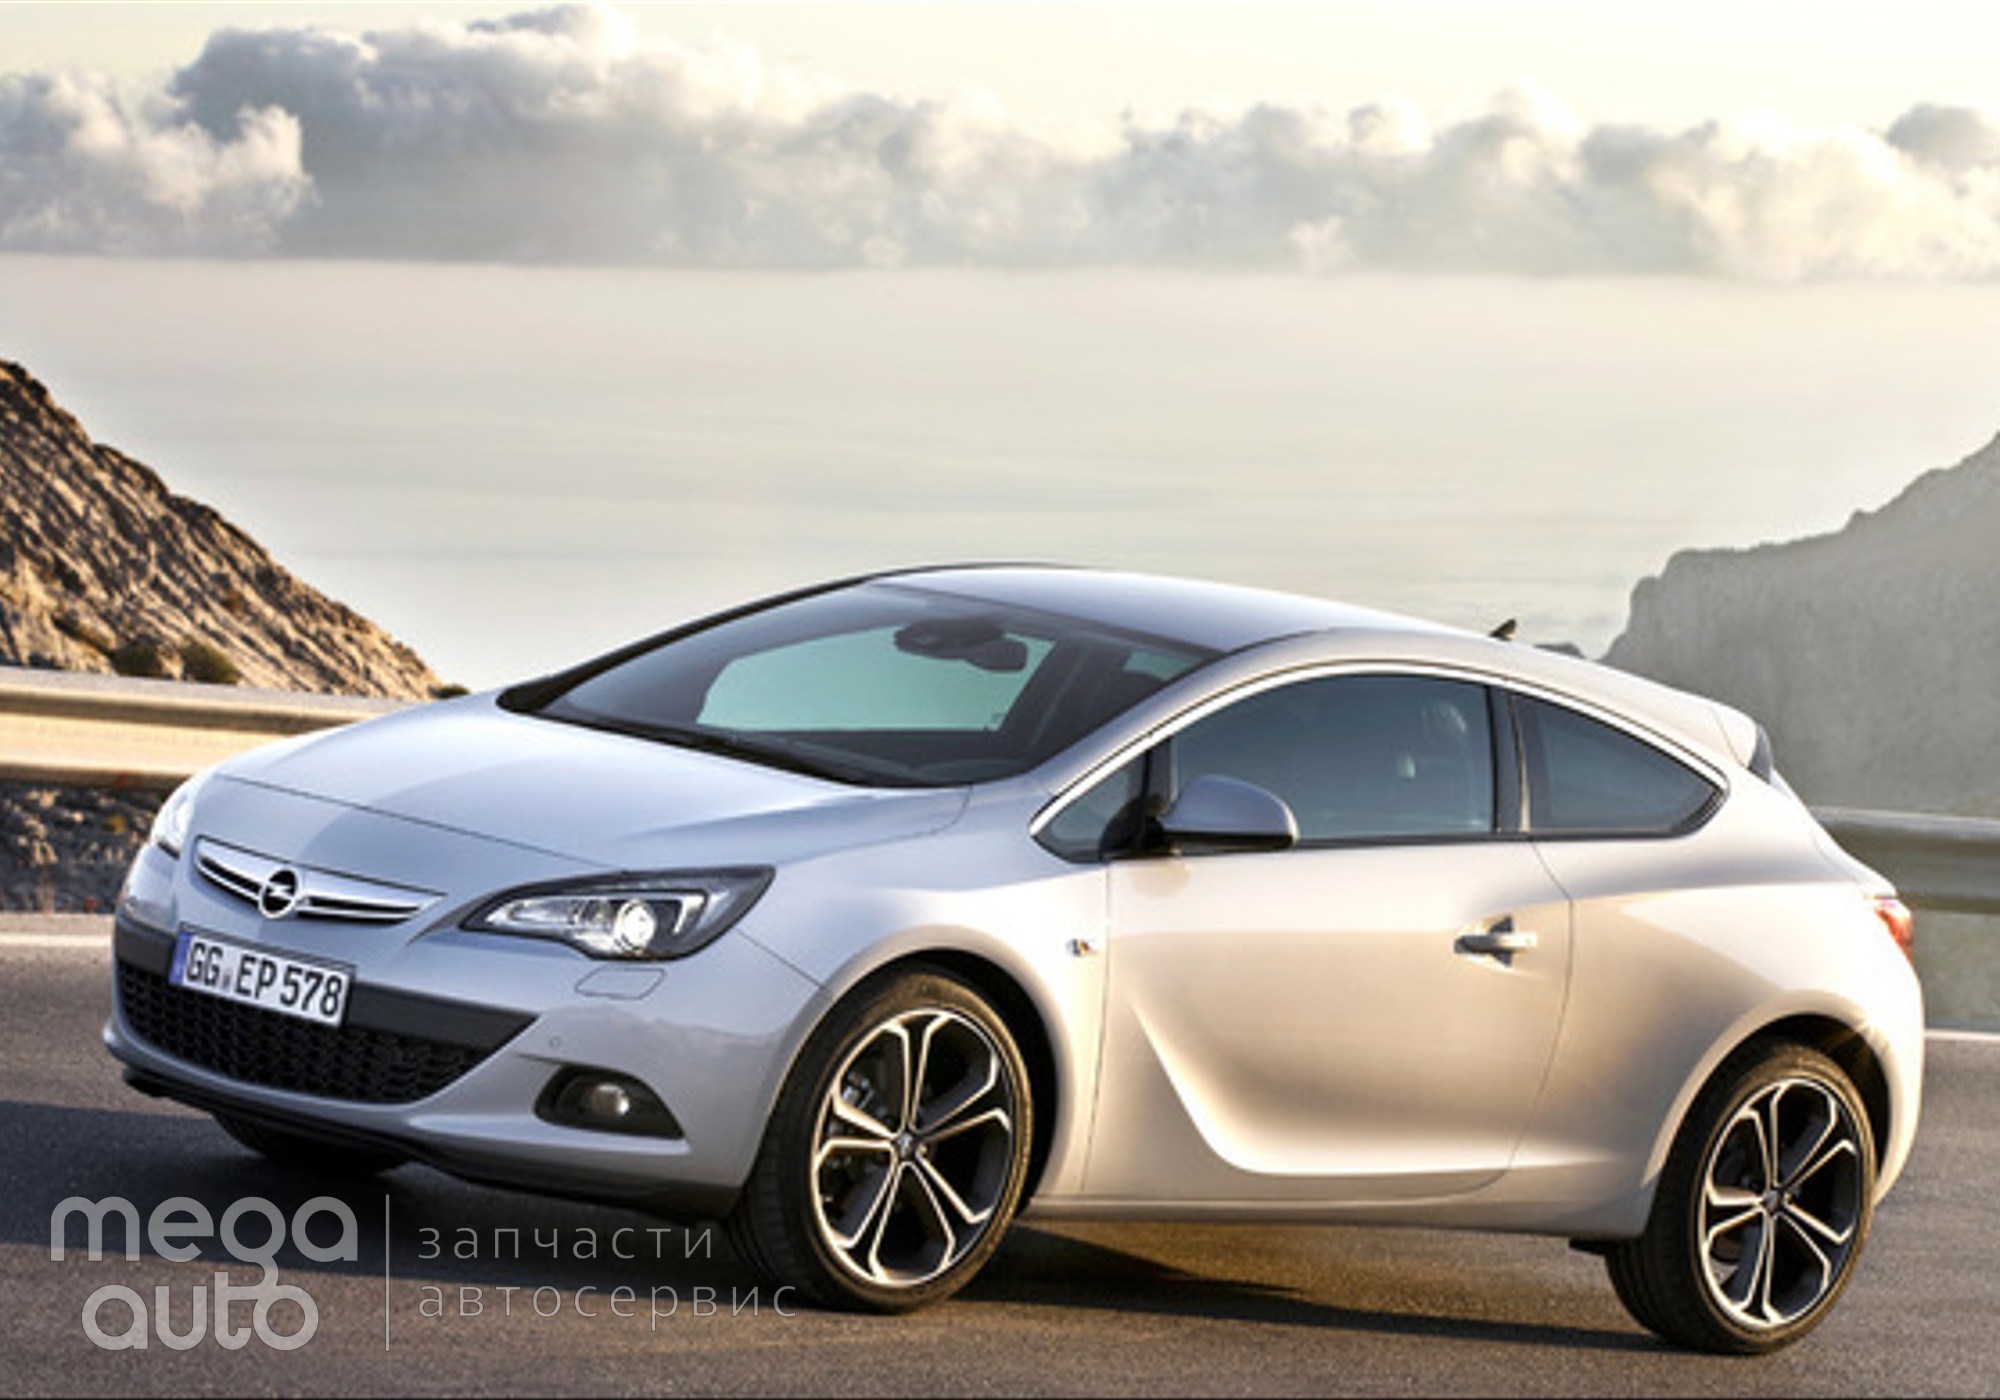 Opel Astra J 2012 г. в разборе